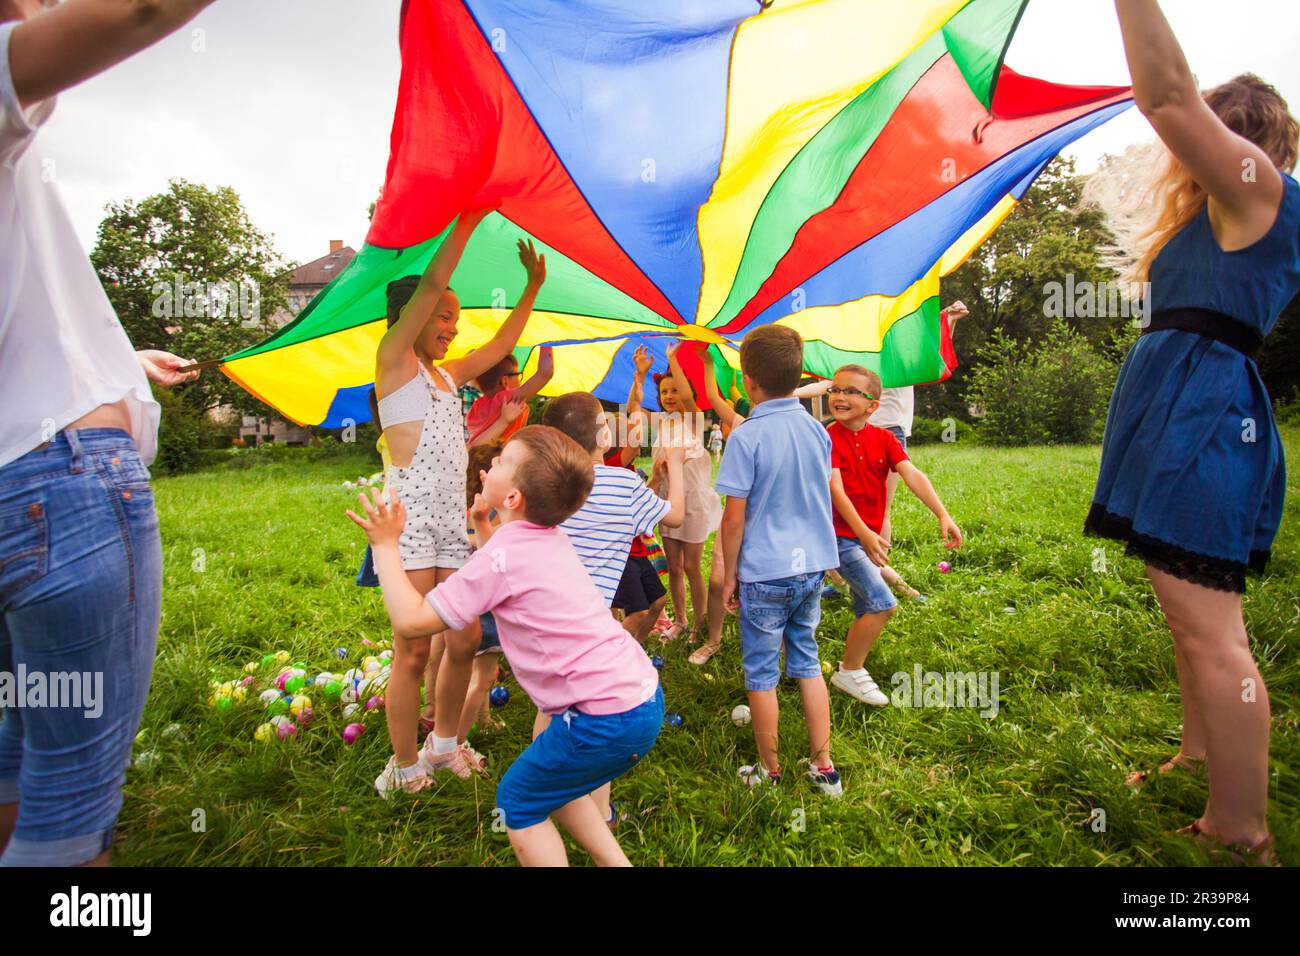 Les enfants se cachent sous le parachute arc-en-ciel en plein air Banque D'Images